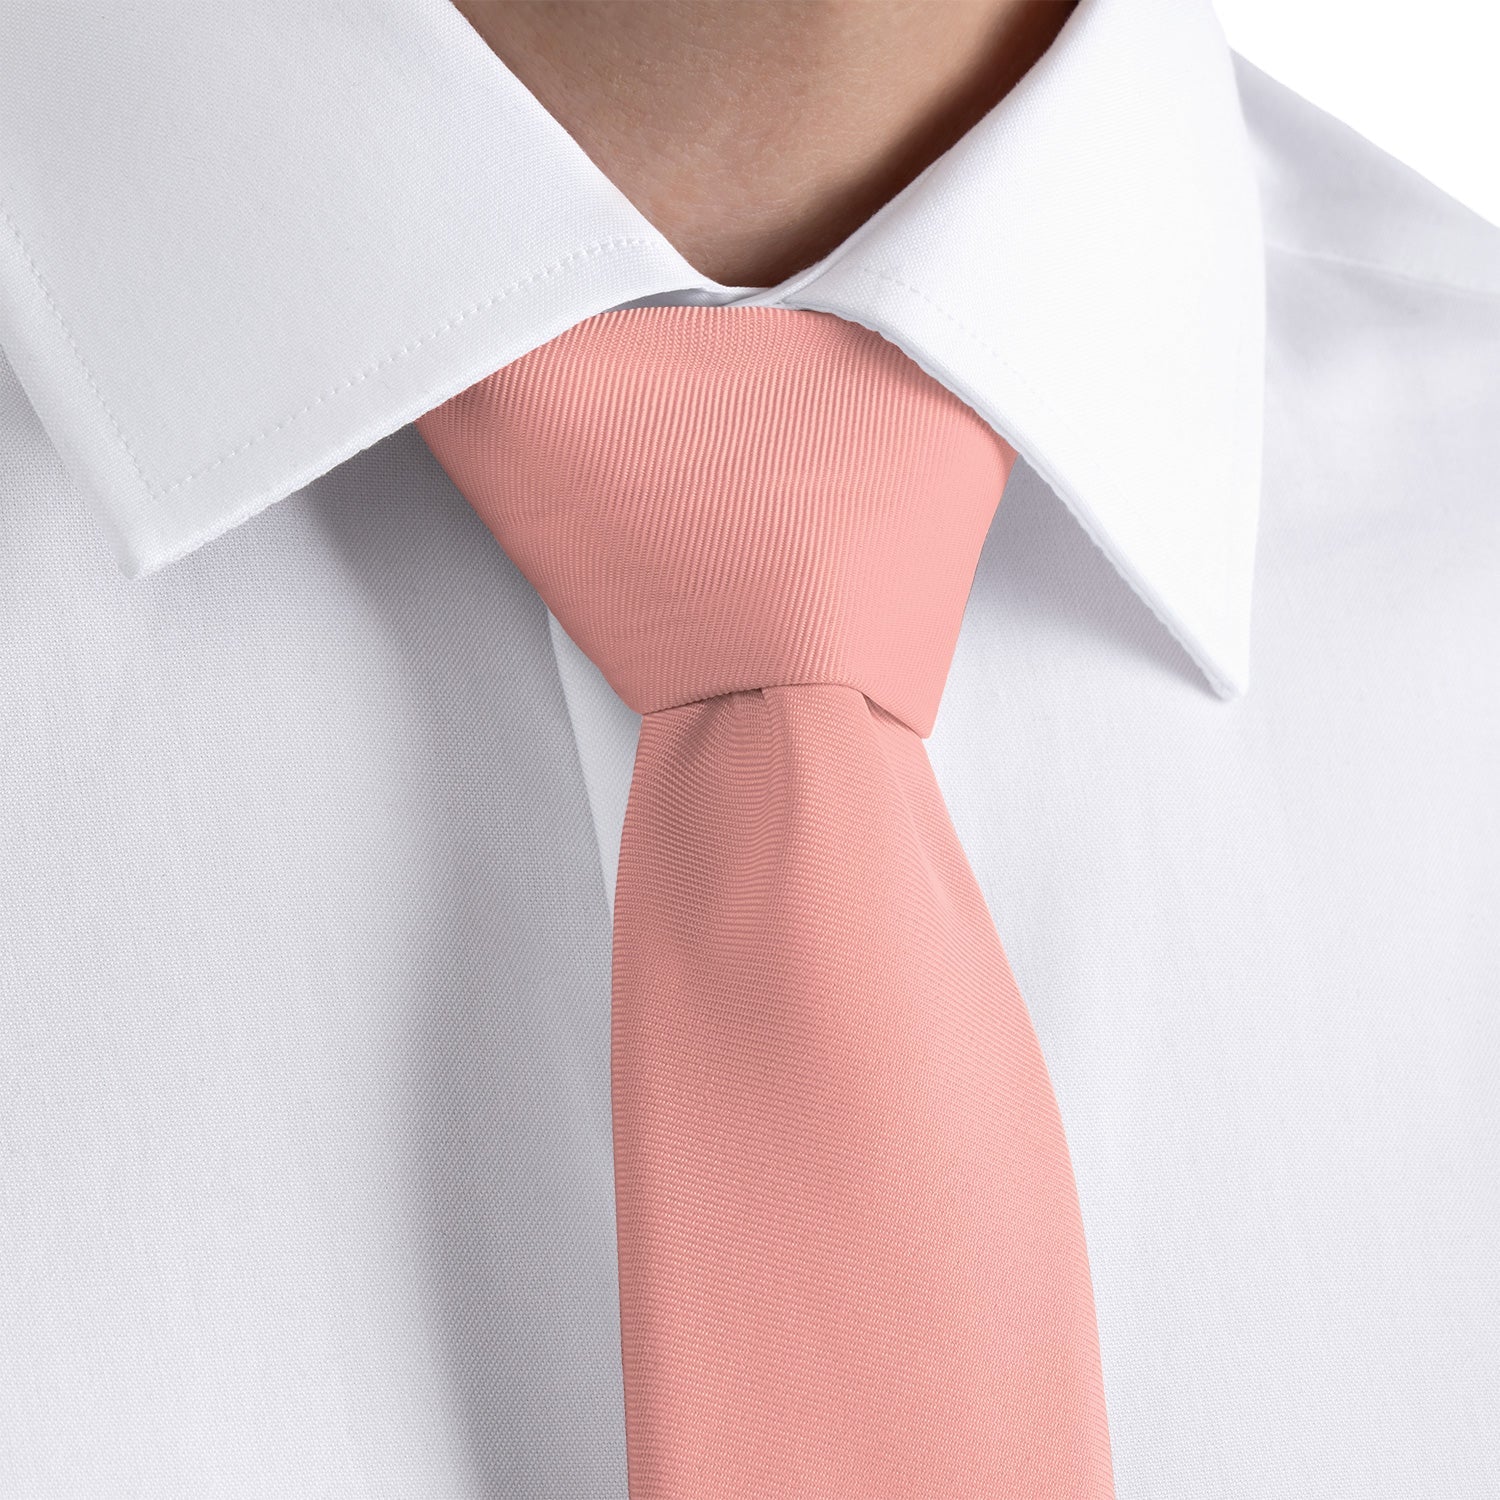 Azazie Coral Necktie - Rolled - Knotty Tie Co.